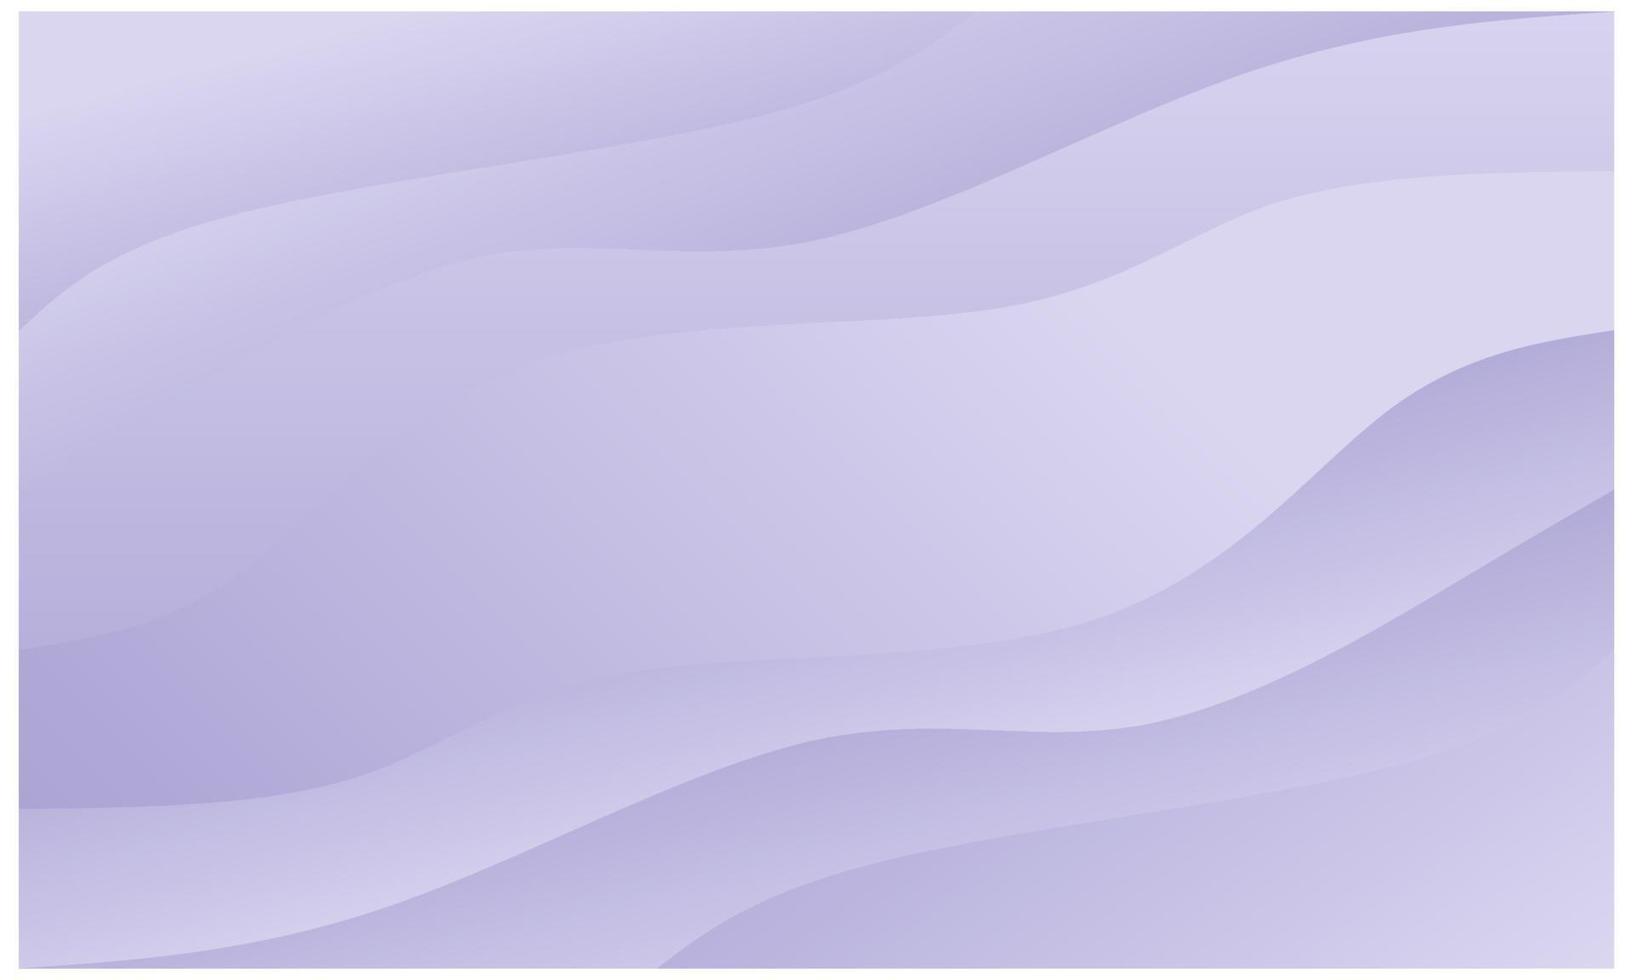 abstrait pastel. conception abstraite violet clair pour affiche, bannière, dépliant, dépliant, carte, brochure, web, etc. vecteur